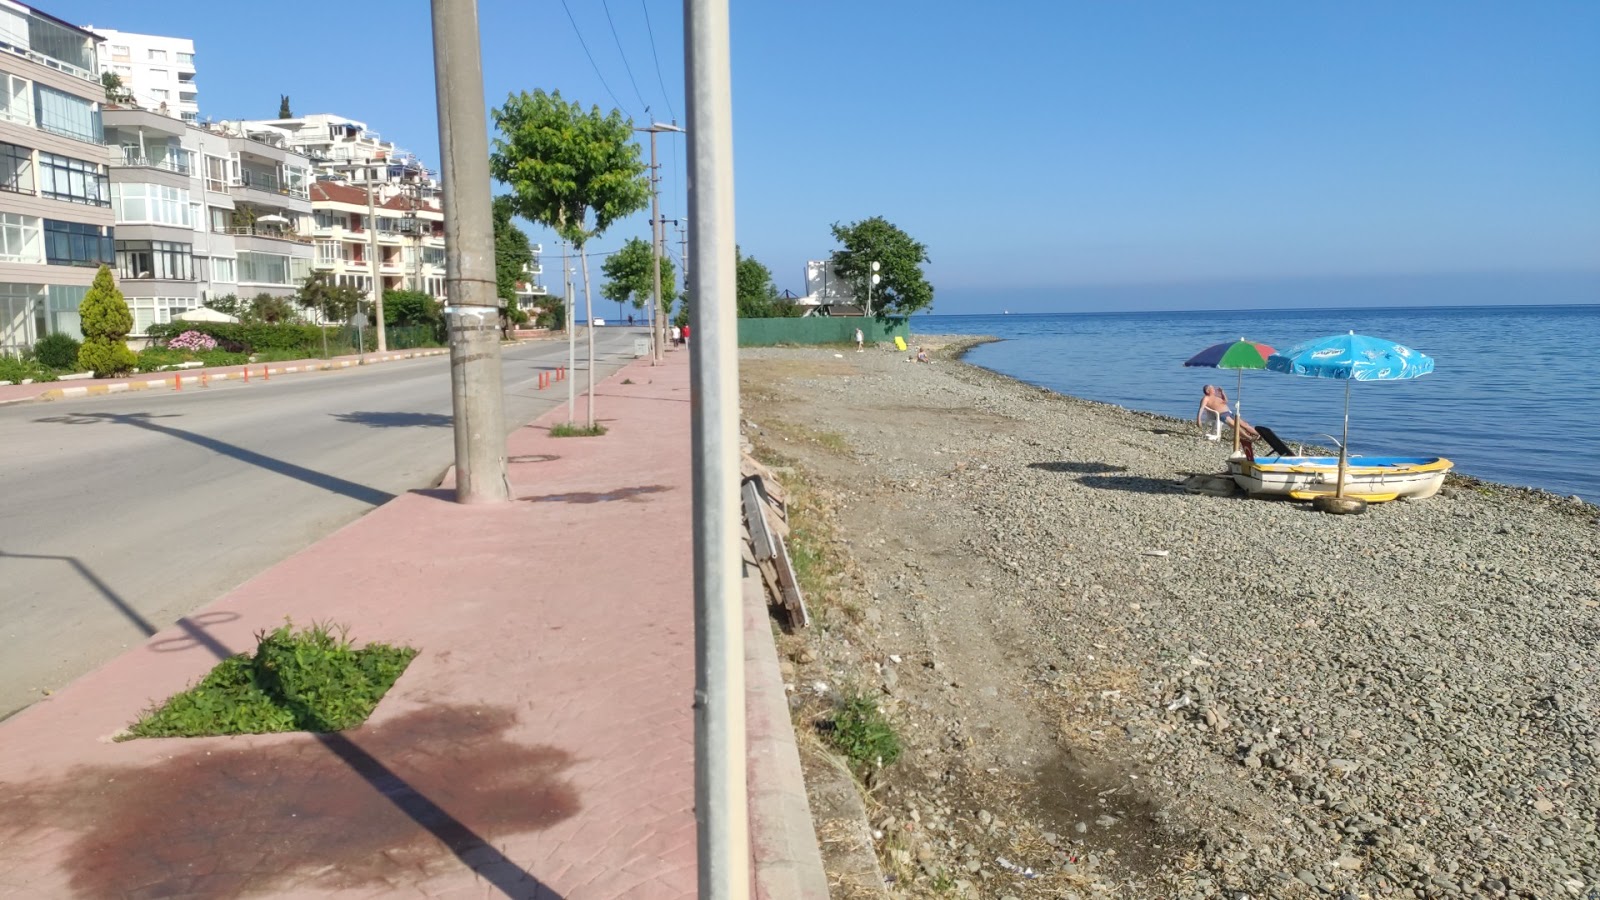 Zdjęcie Cinarcik beach z poziomem czystości głoska bezdźwięczna